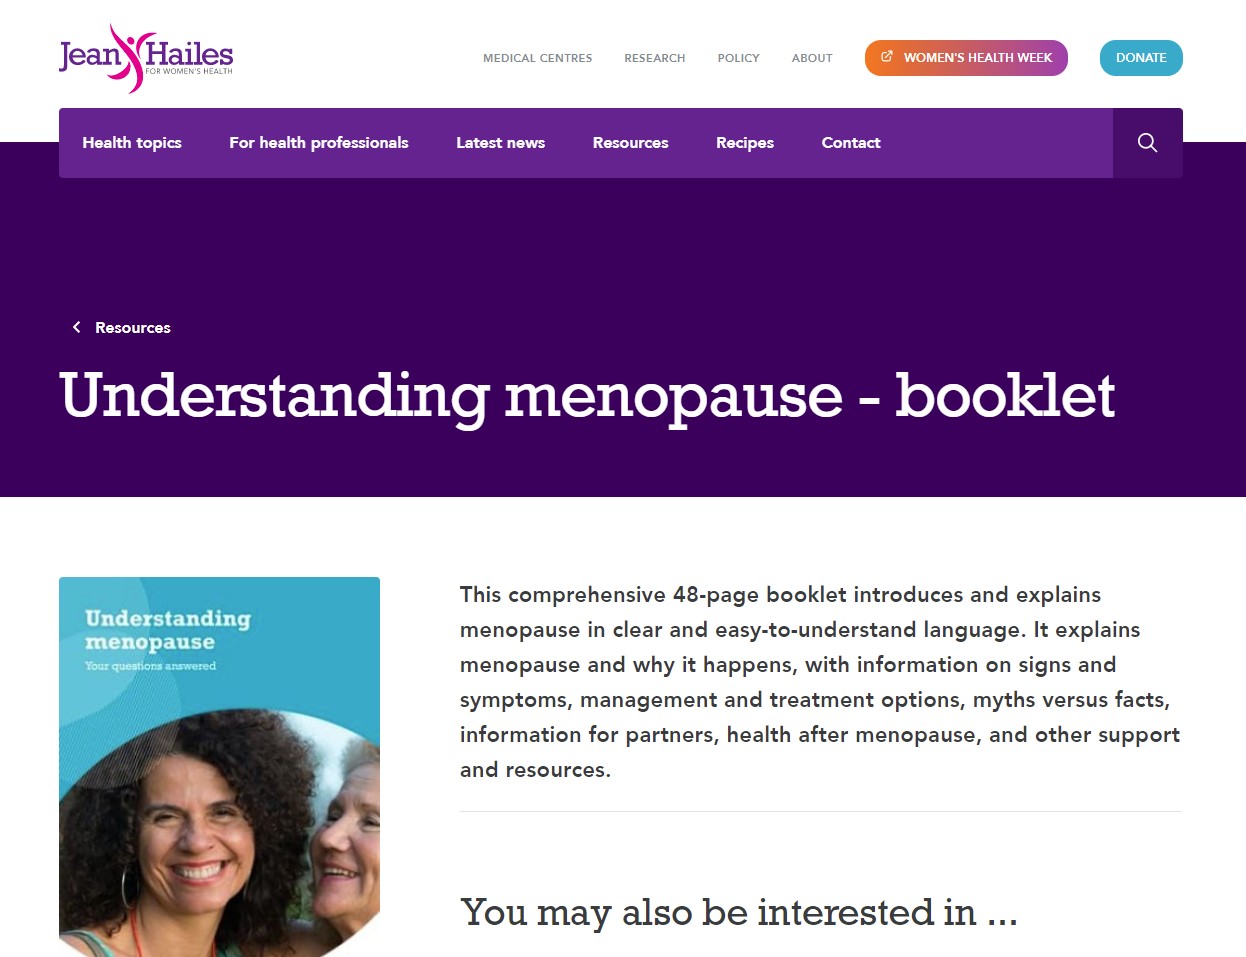 Jean Hailes - Understanding menopause thumbnail